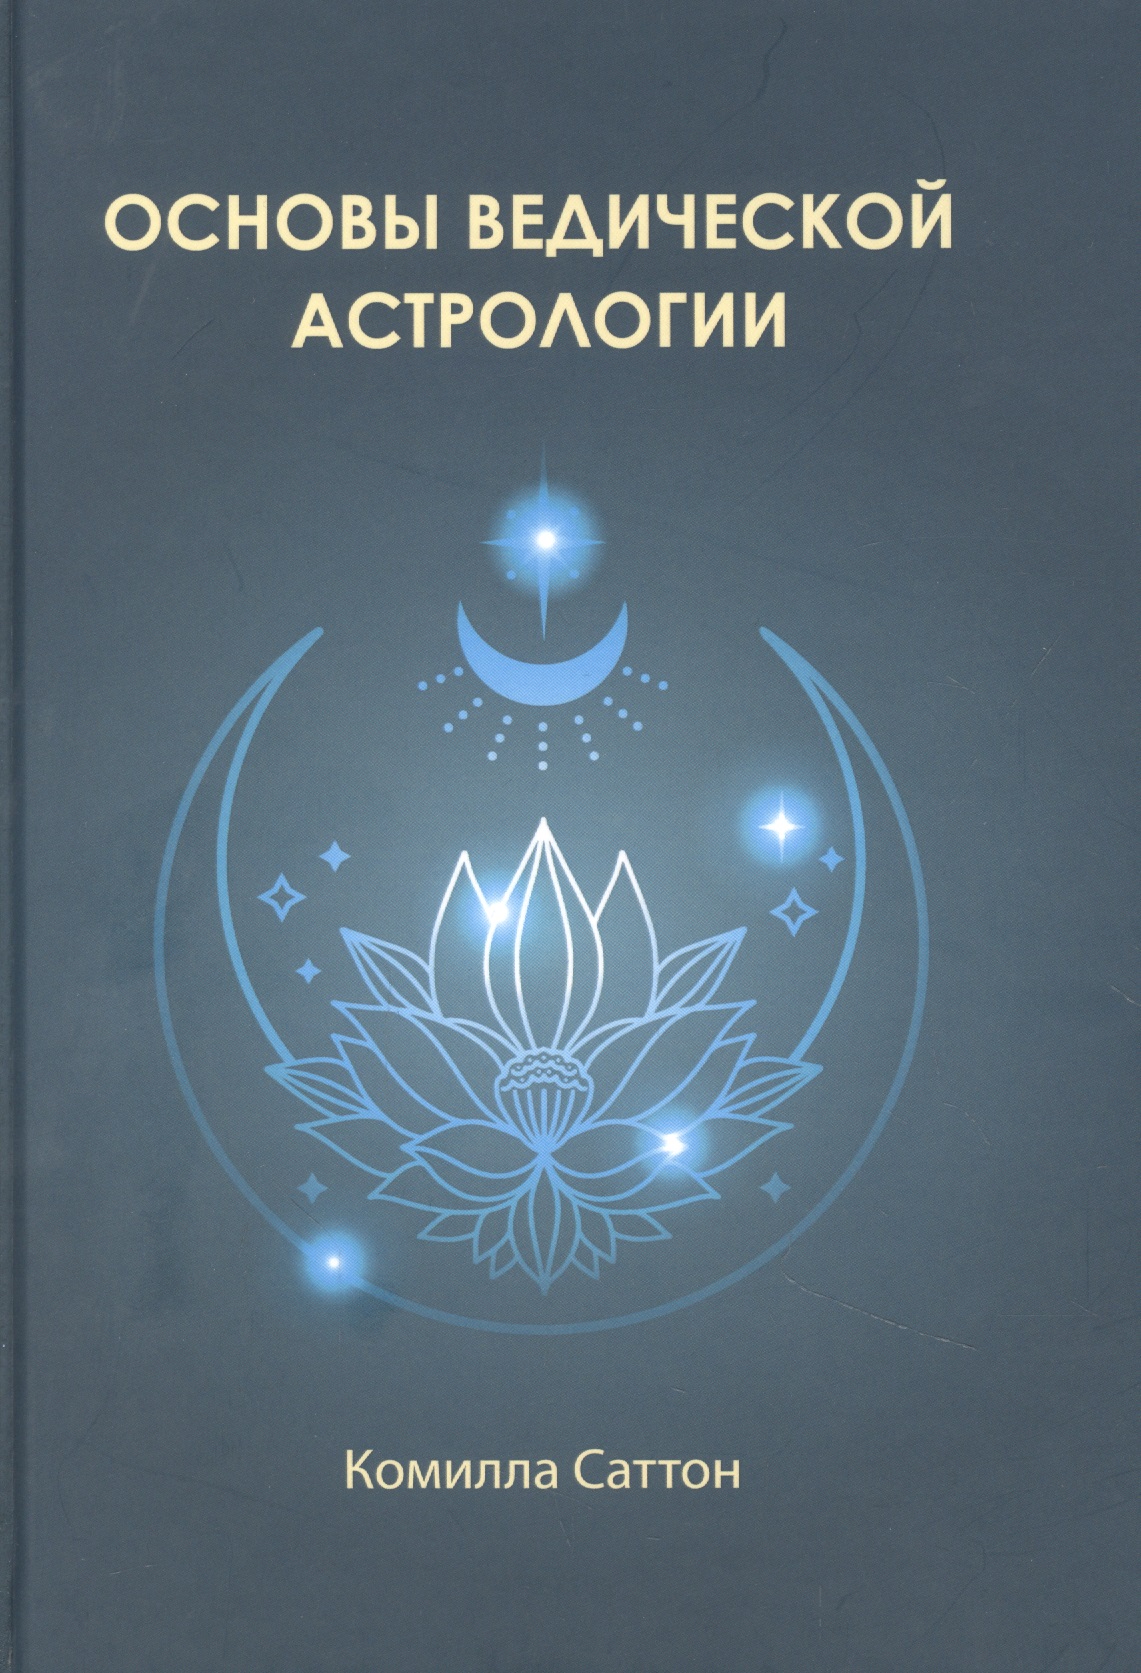 рао н интегральный подход к ведической астрологии Саттон Камилла Основы ведической астрологии